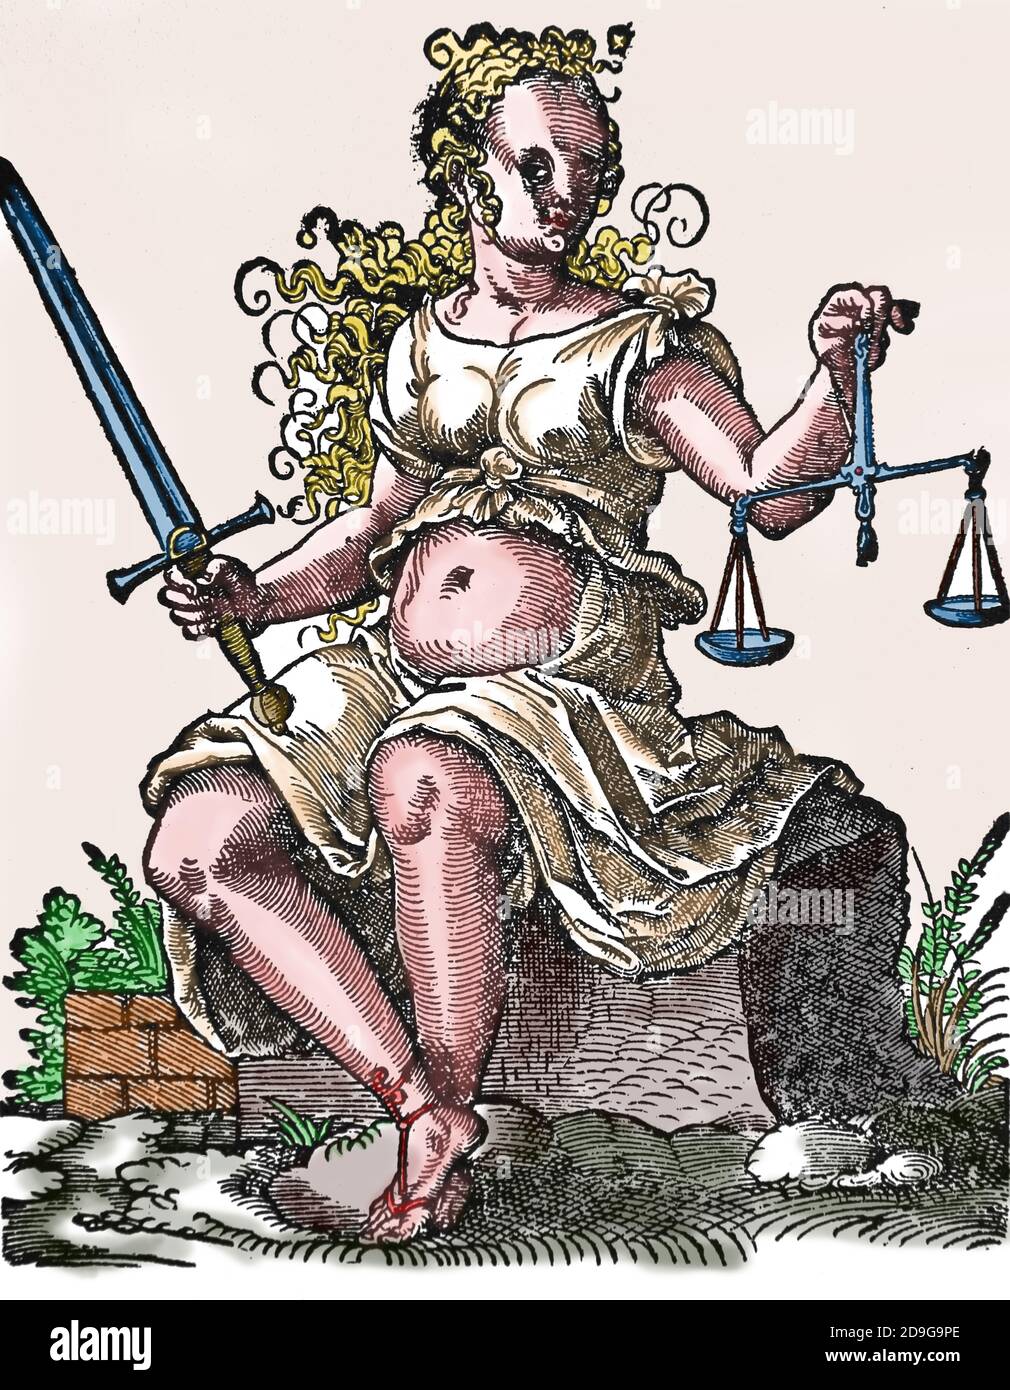 Lady Justice (Justitia) tenant un équilibre de faisceau et une épée. Gravure par Jost Amman (1539-1591). Coloration ultérieure. Banque D'Images